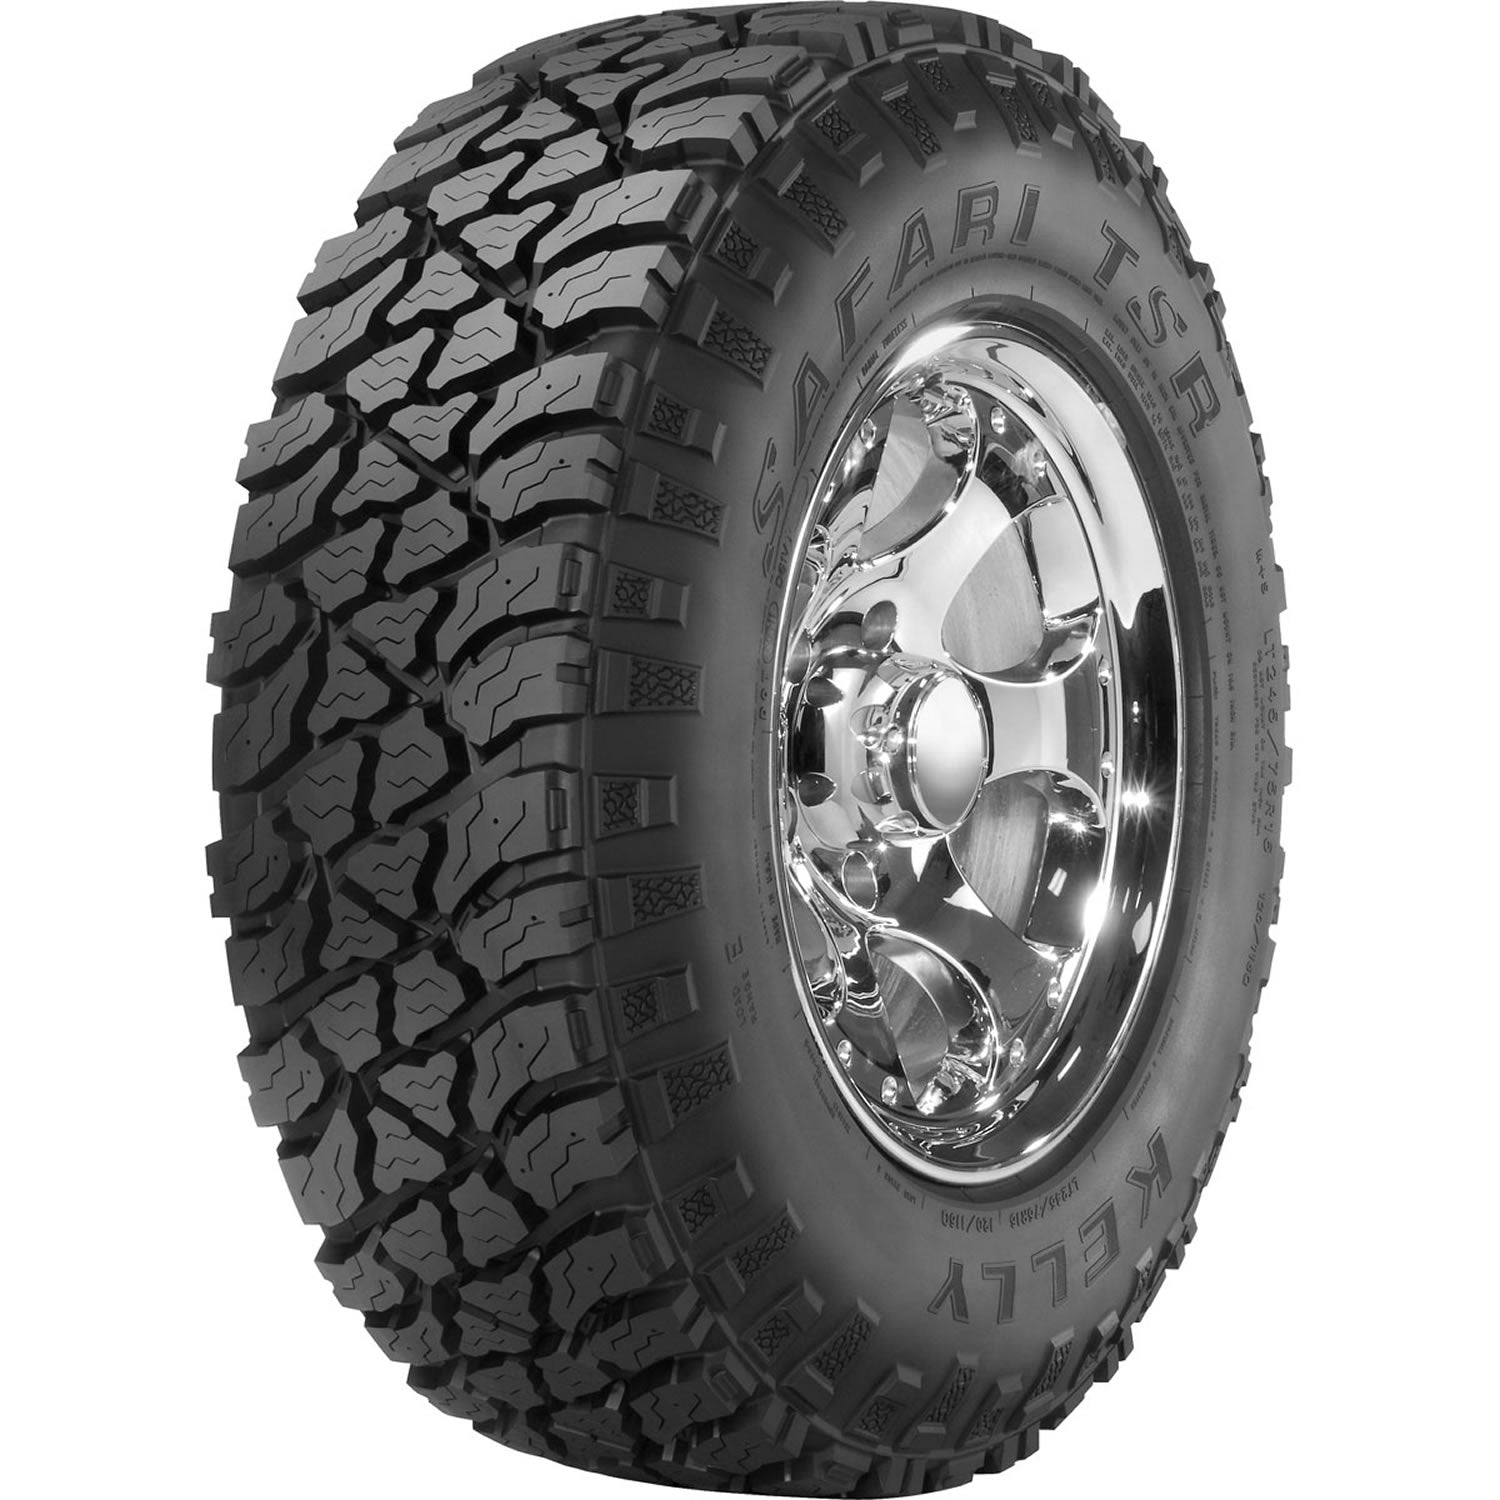 KELLY SAFARI TSR LT285/70R17 (33X11.5R 17) Tires